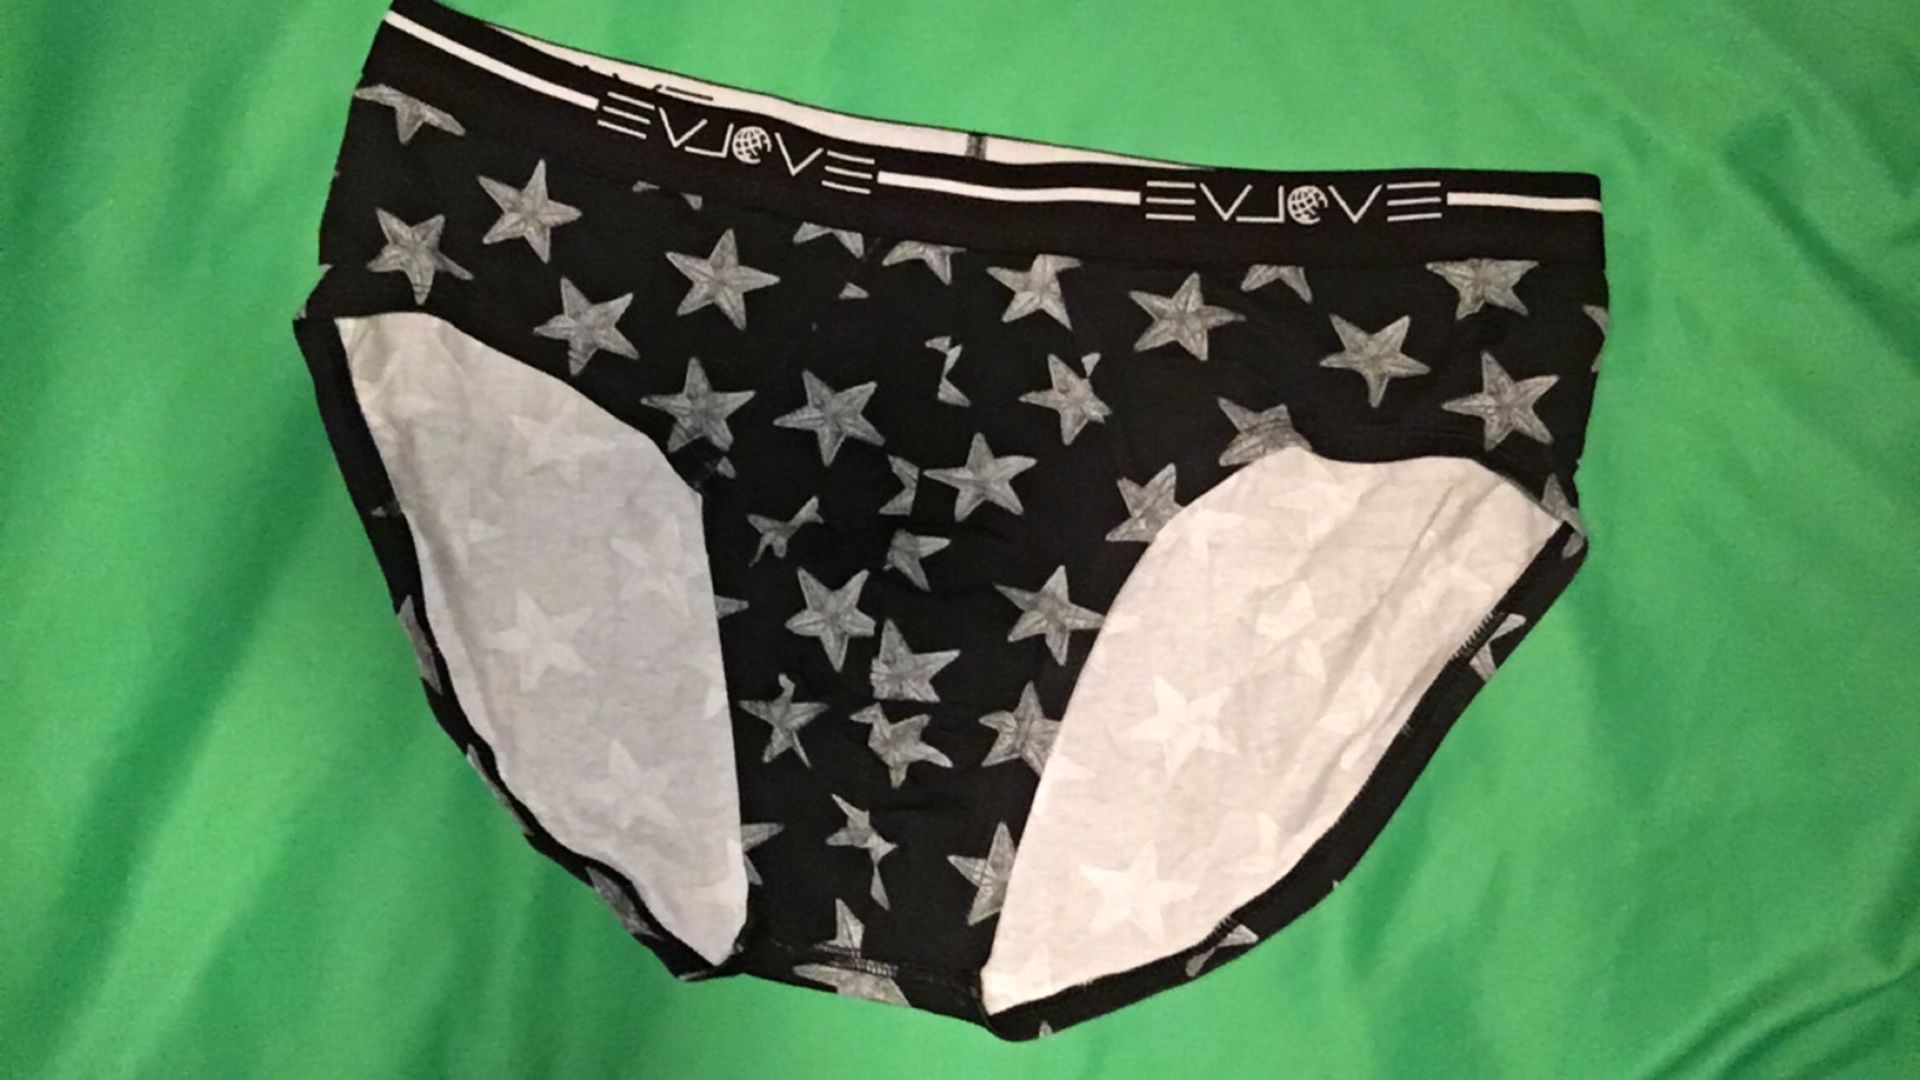 Vintage Hanes underwear box for Sale in Largo, FL - OfferUp